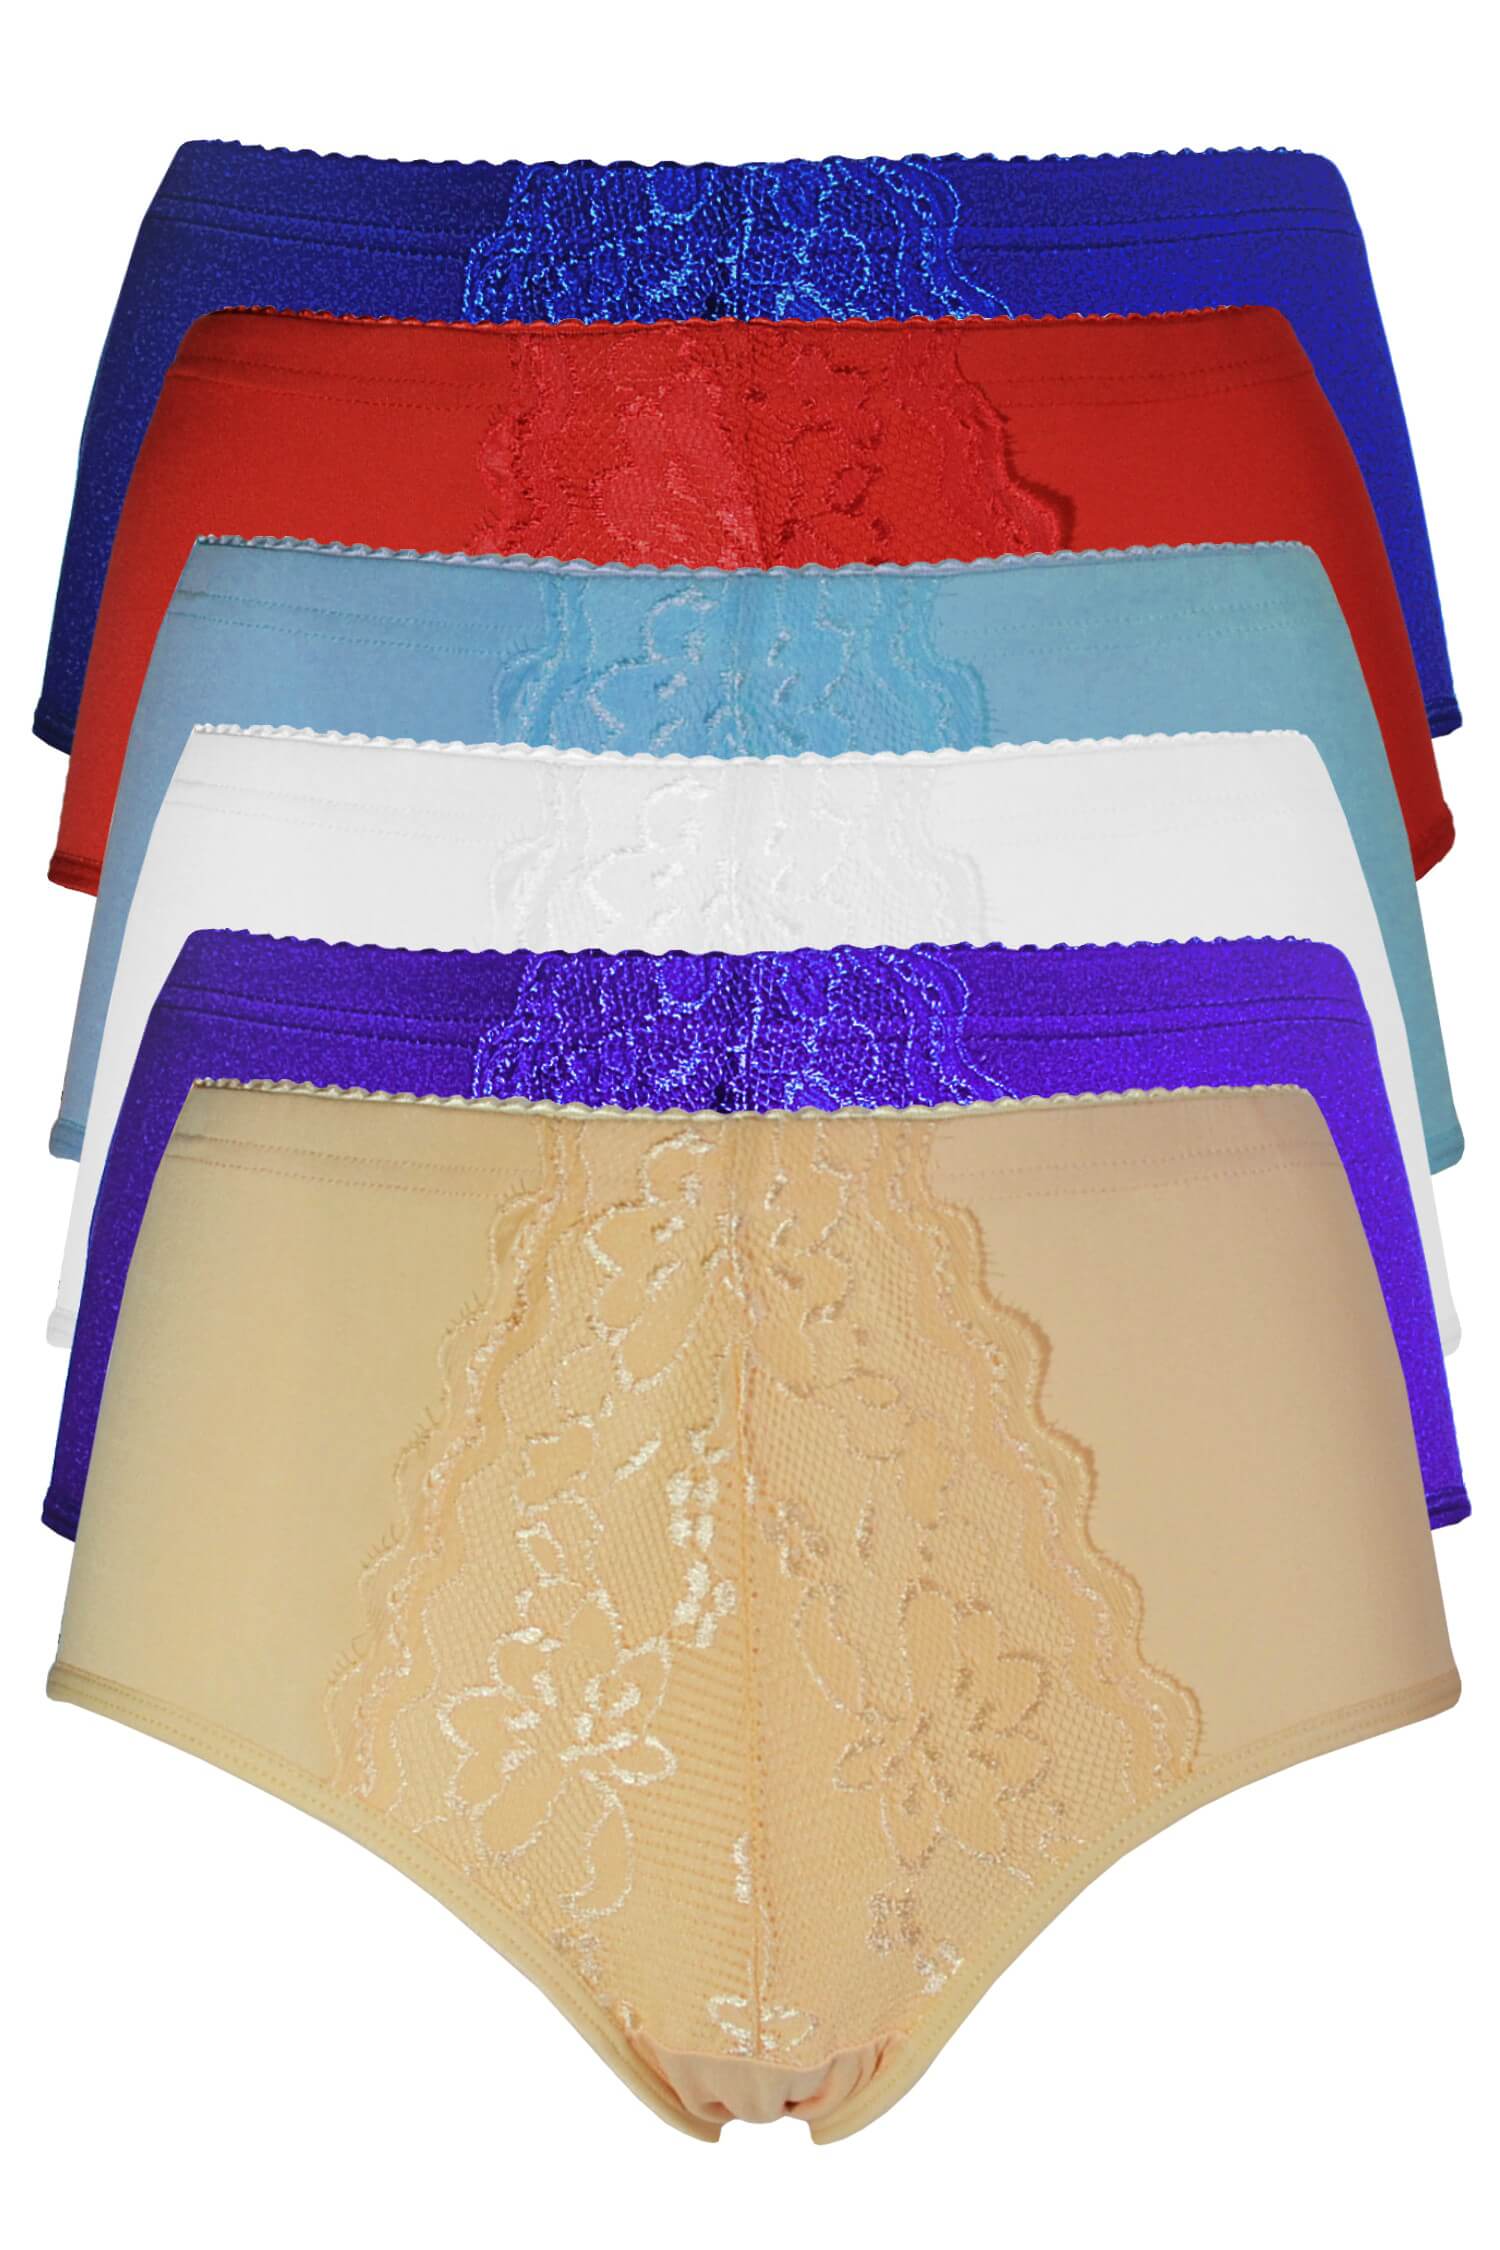 Jitka dámské bavlněné kalhotky s krajkou 9040 - 3 ks L vícebarevná